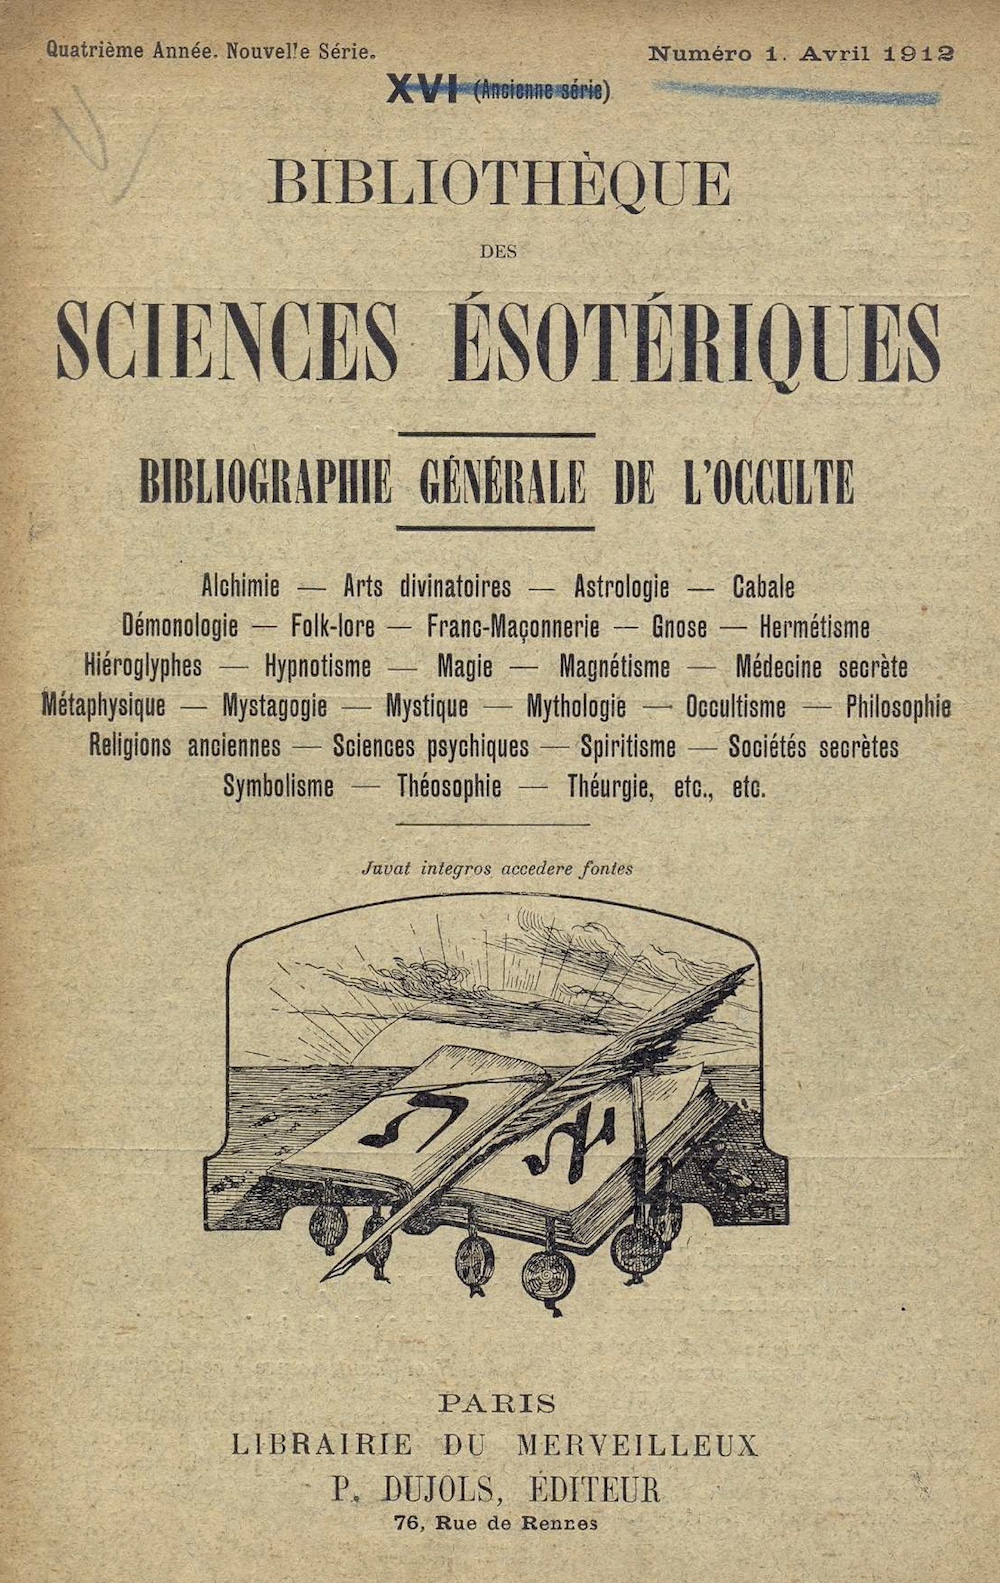 Science et Magie Archives - Librairie d'occasion